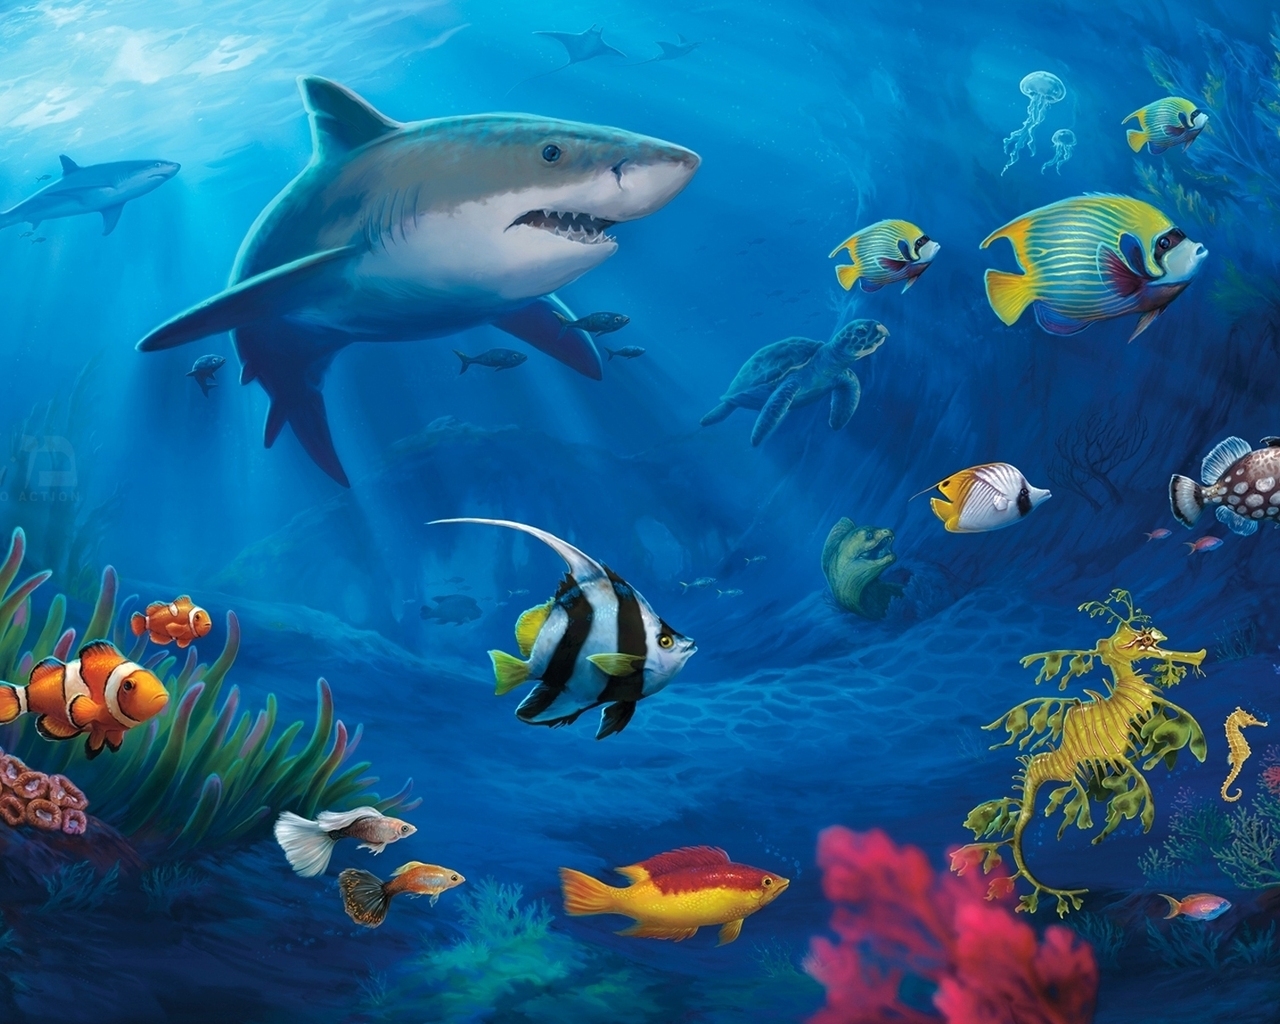 Underwater World Live for 1280 x 1024 resolution